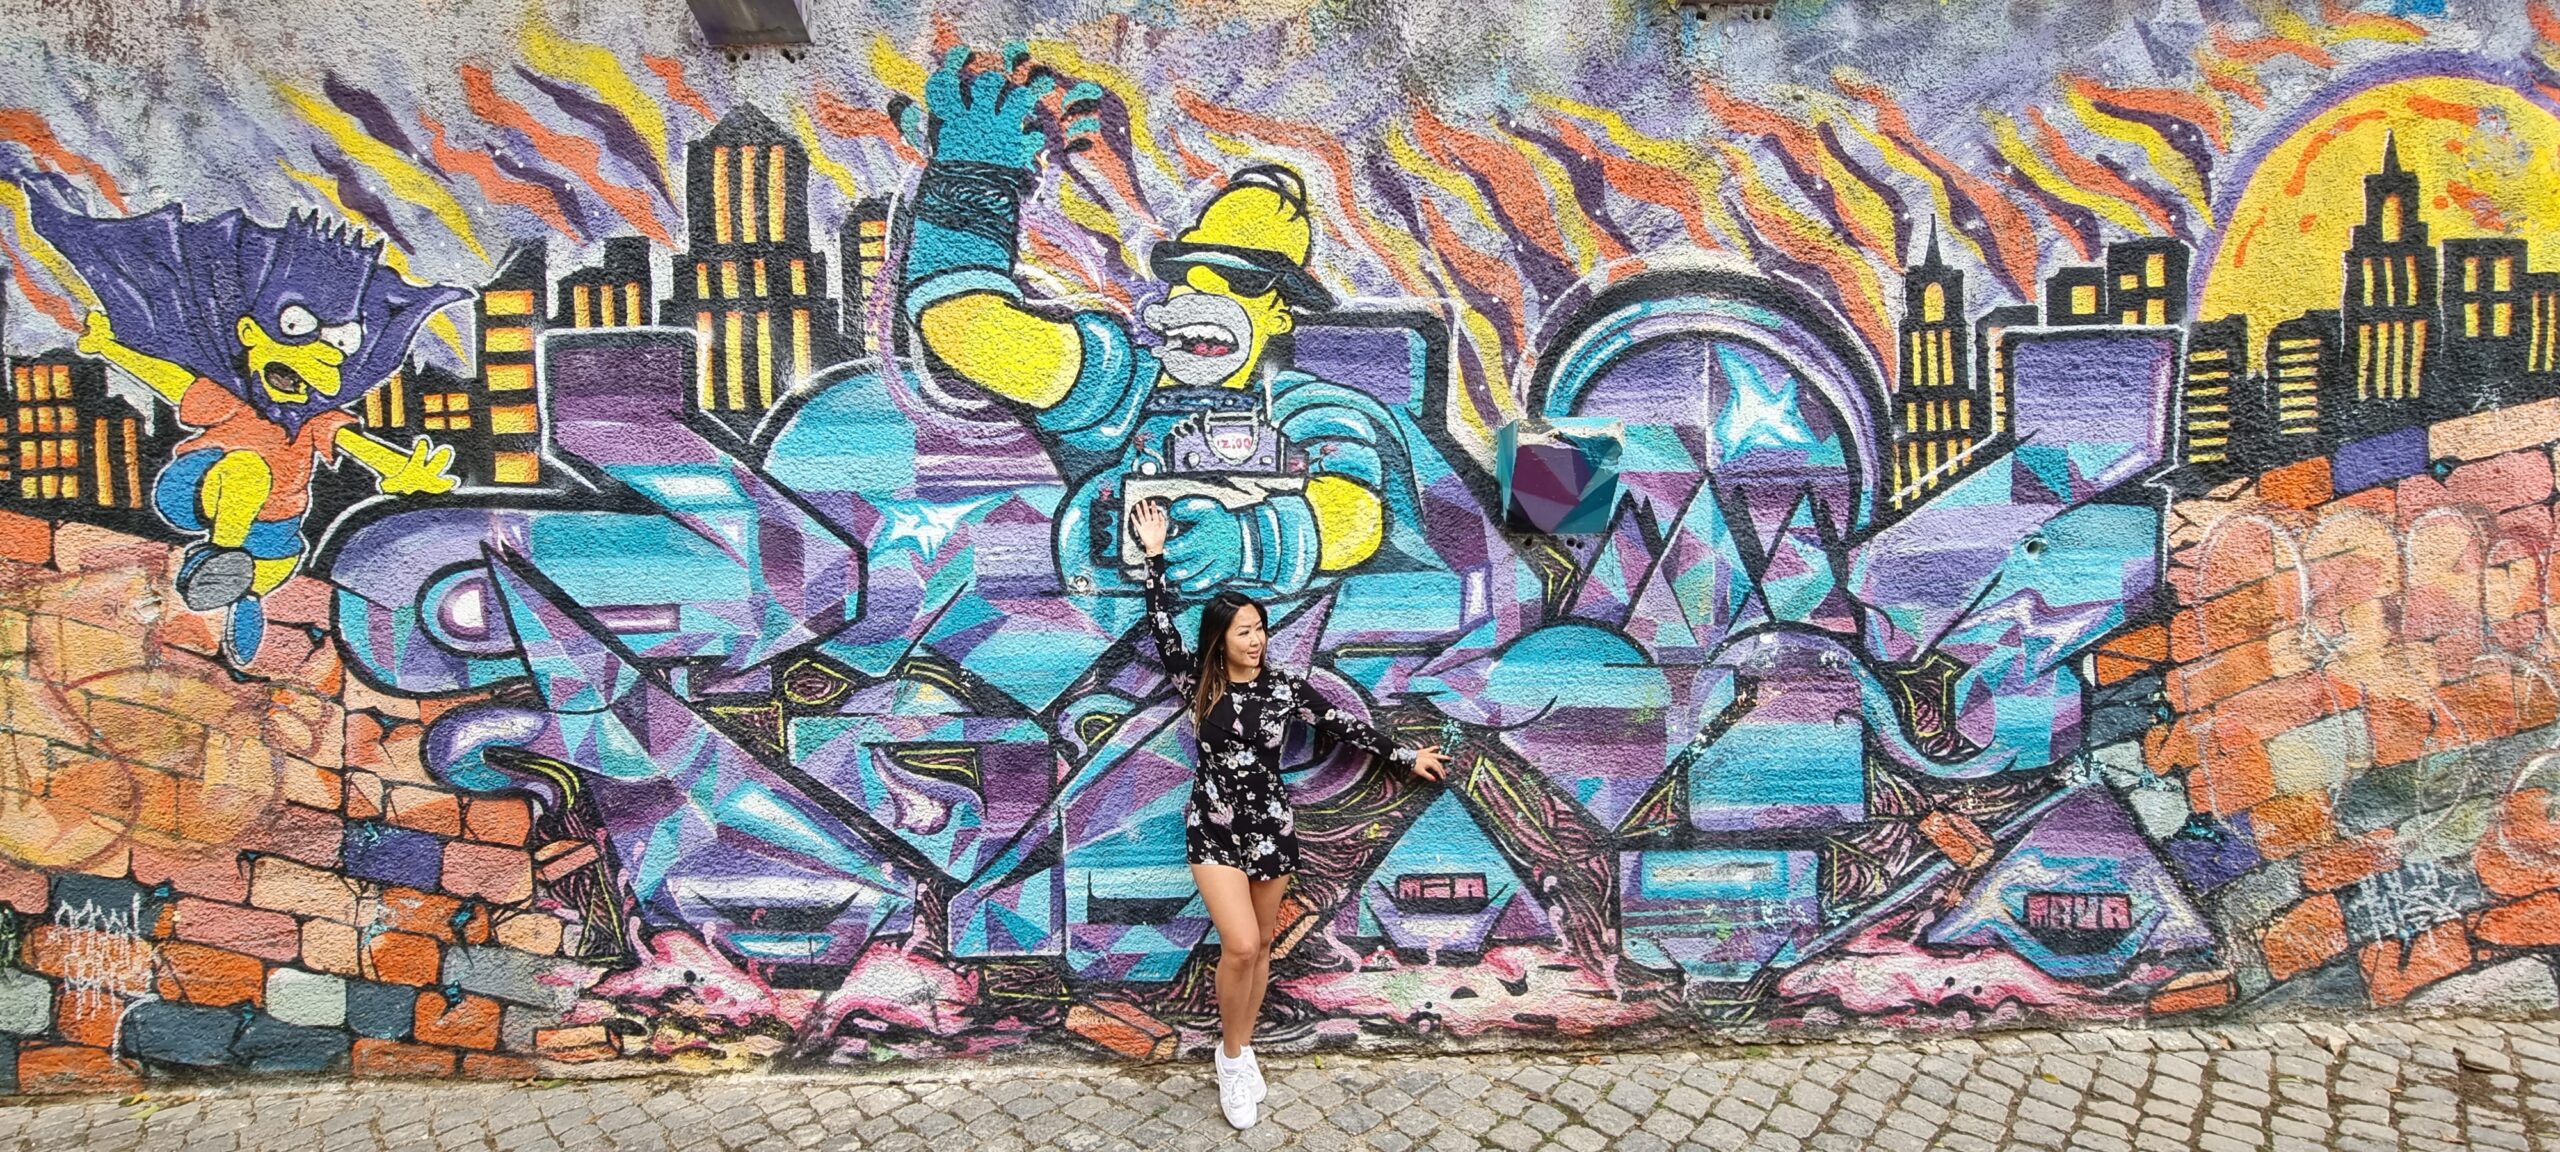 Graffiti art Luxembourg